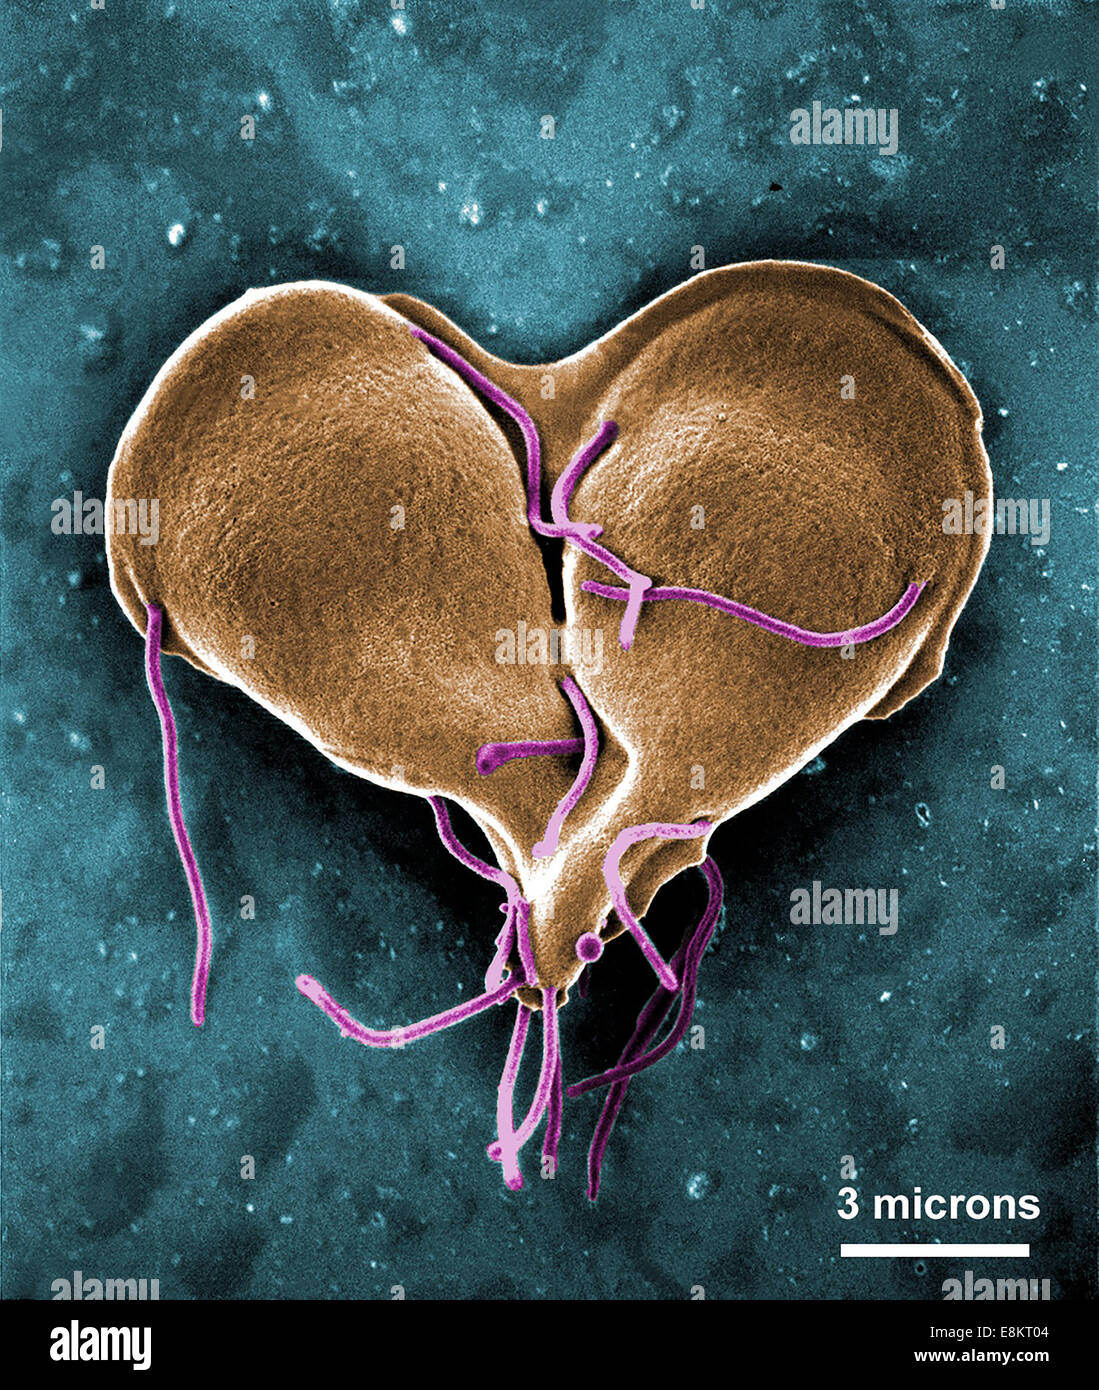 Cette colorisée numériquement l'analyse des électrons Microphotographie (SEM) dépeint le Giardia lamblia protozoaire qui était sur le point de devenir deux, Banque D'Images